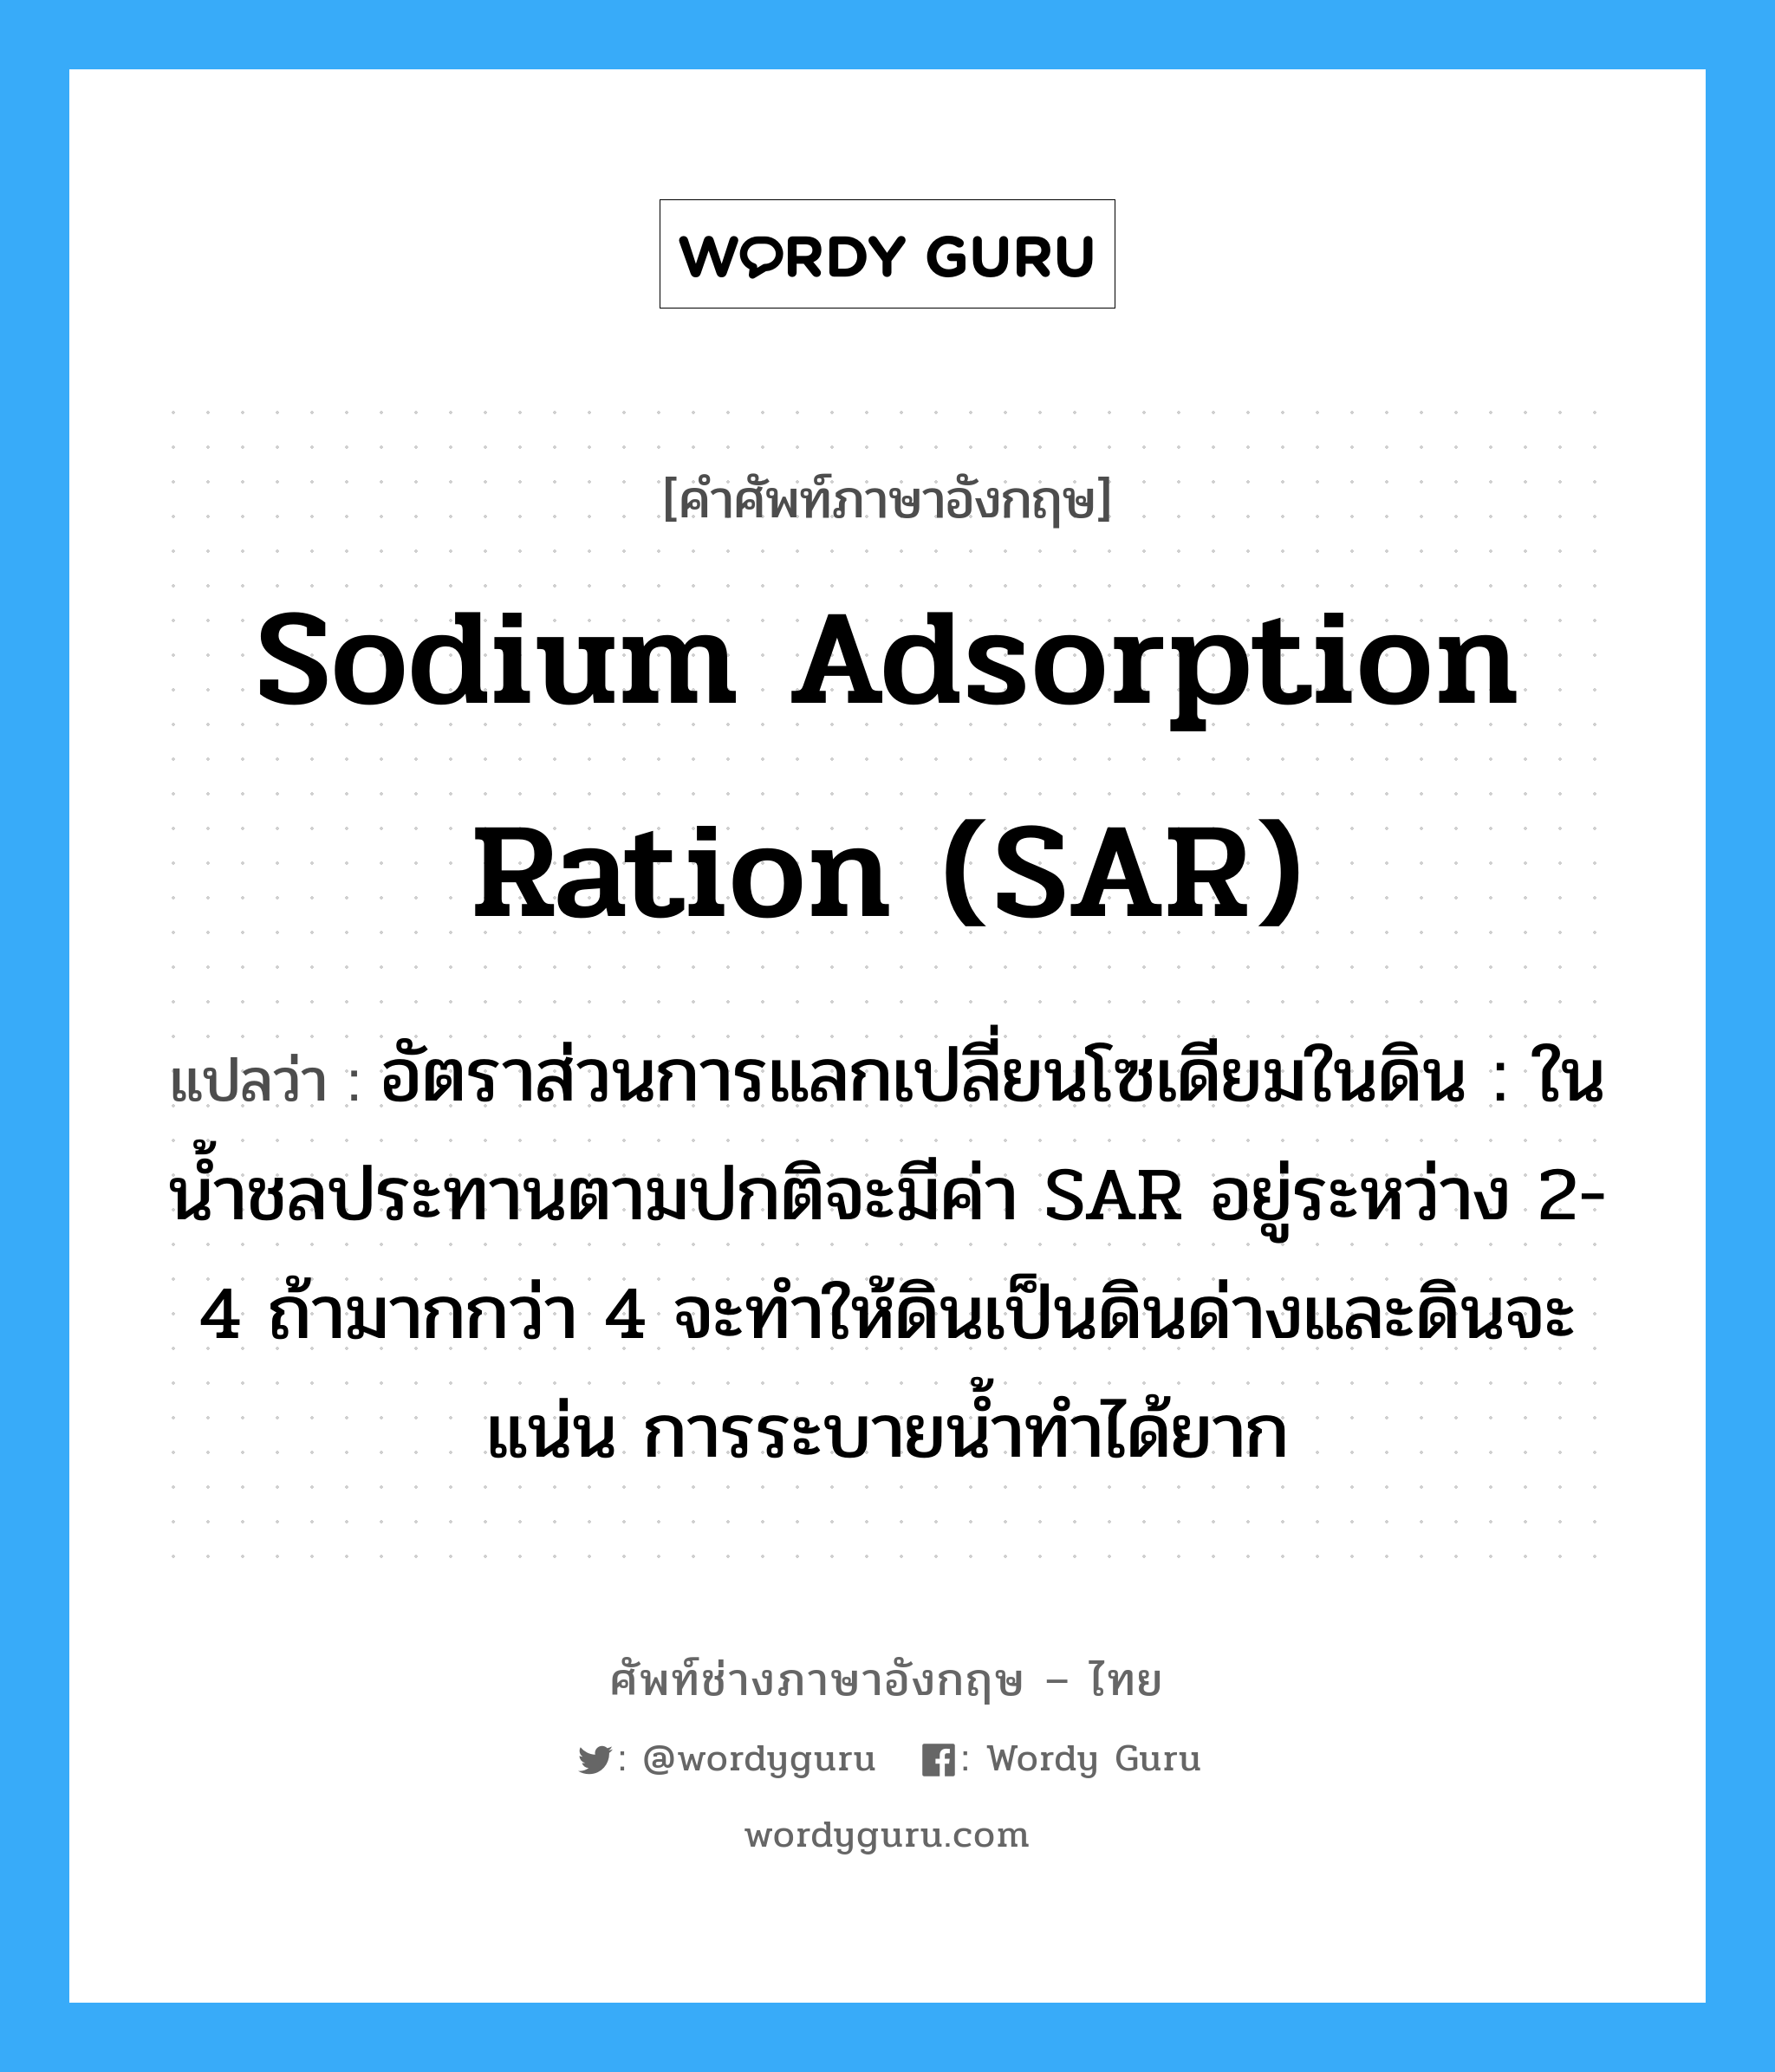 sodium adsorption ration (SAR) แปลว่า?, คำศัพท์ช่างภาษาอังกฤษ - ไทย sodium adsorption ration (SAR) คำศัพท์ภาษาอังกฤษ sodium adsorption ration (SAR) แปลว่า อัตราส่วนการแลกเปลี่ยนโซเดียมในดิน : ในน้ำชลประทานตามปกติจะมีค่า SAR อยู่ระหว่าง 2-4 ถ้ามากกว่า 4 จะทำให้ดินเป็นดินด่างและดินจะแน่น การระบายน้ำทำได้ยาก